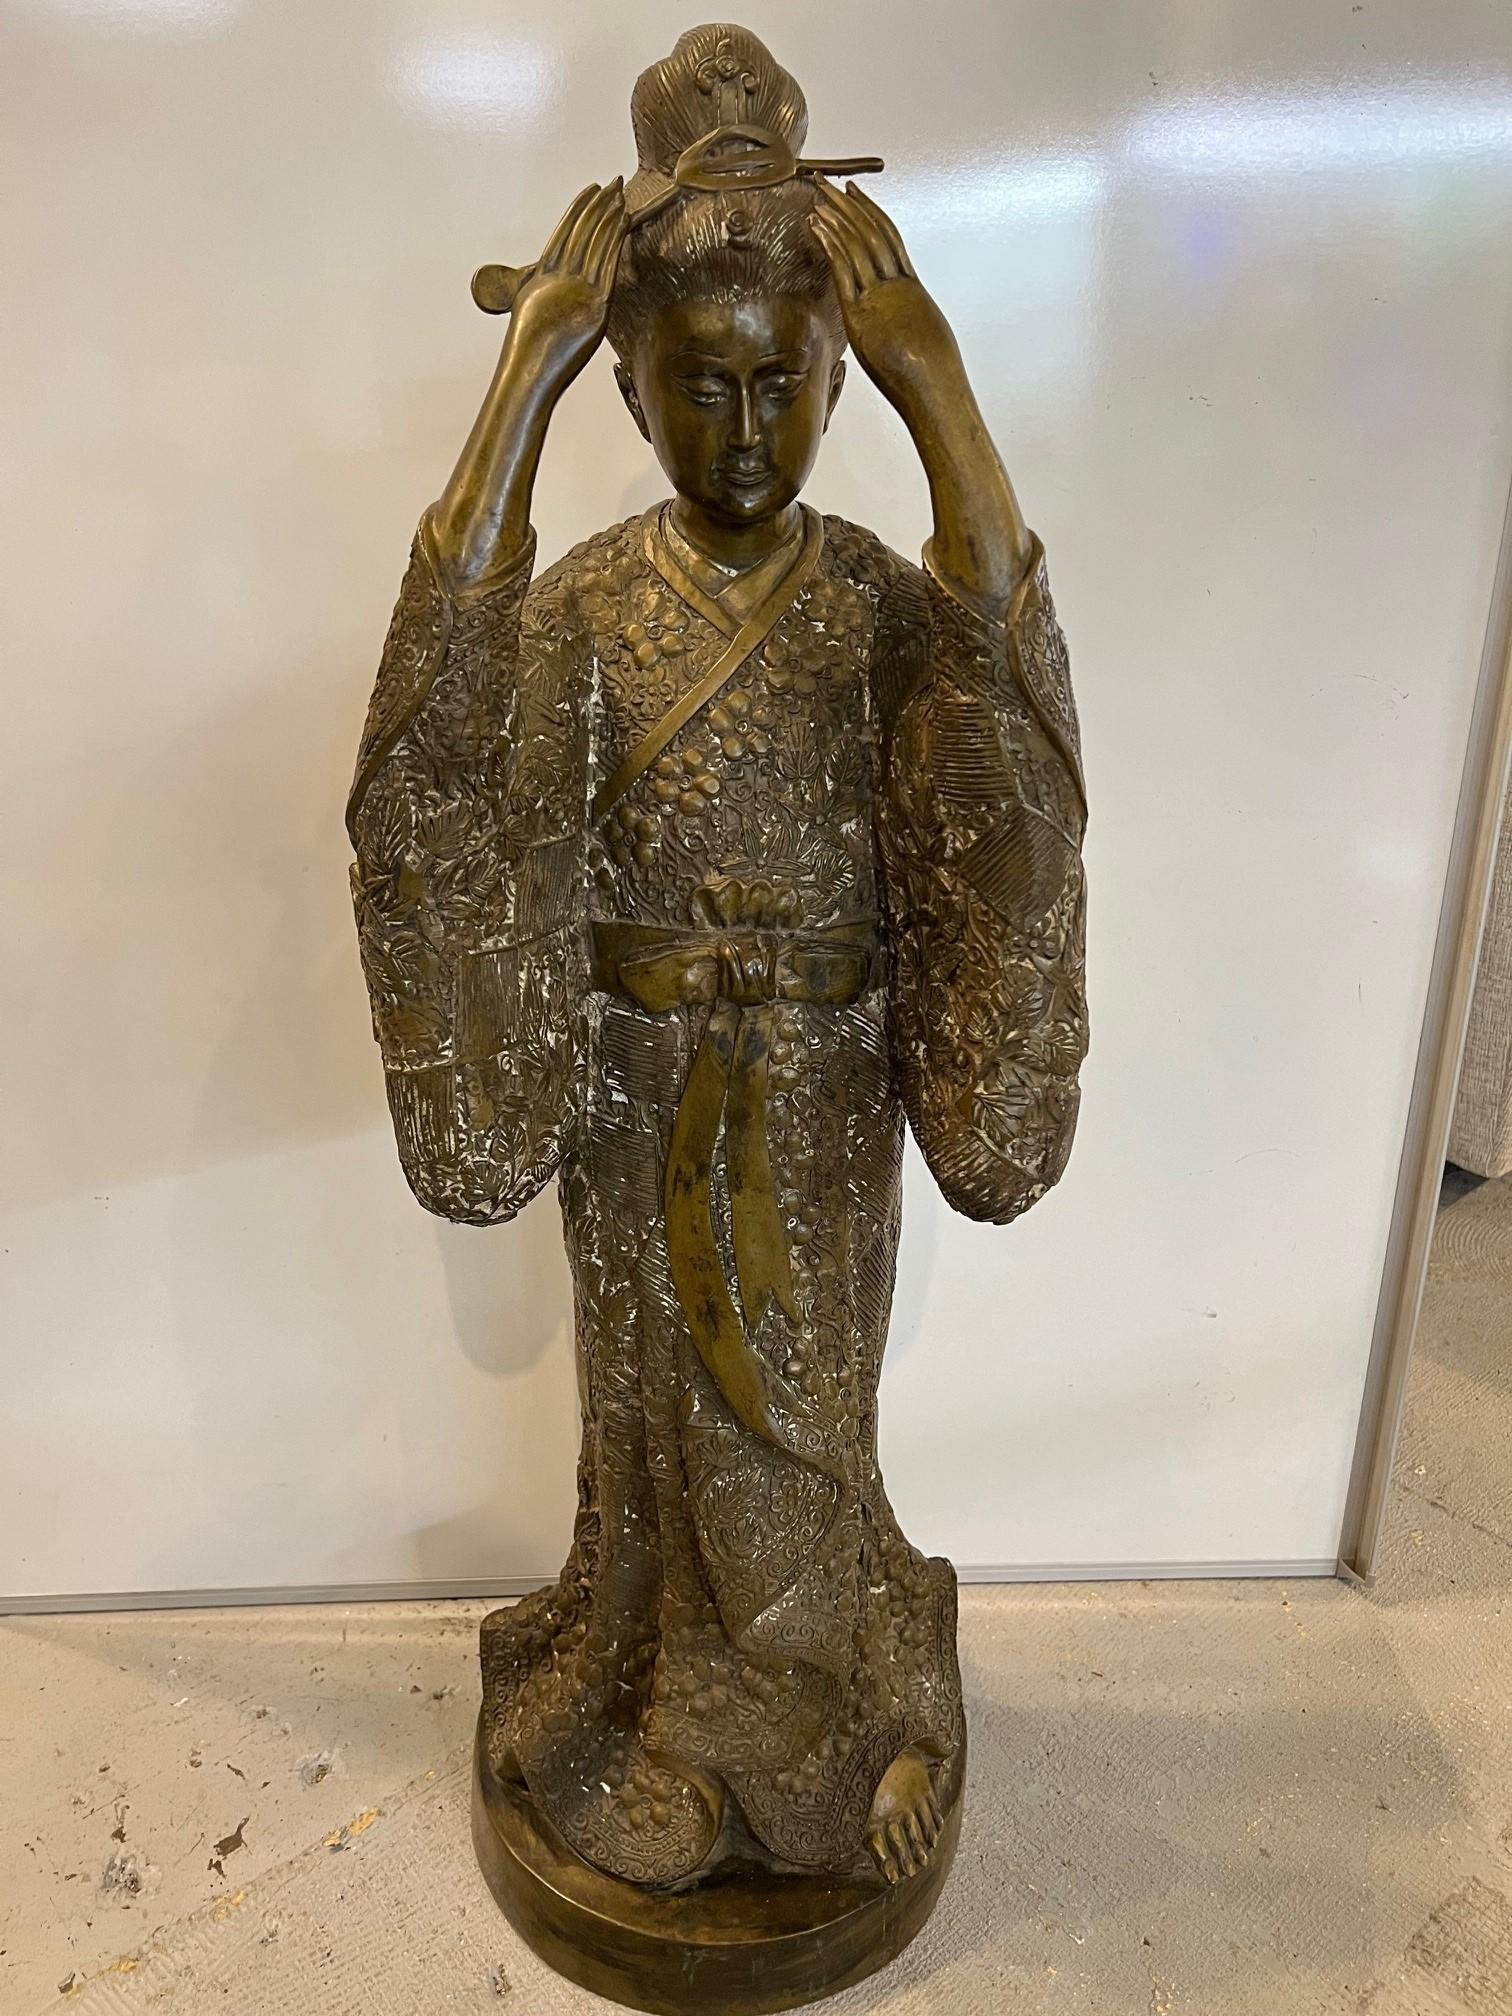 Schöne Bronzefigur einer stehenden japanischen Geisha in einem traditionellen Kimono mit Obi. Der Susohiki-Kimono der Geisha ist mit einem verschlungenen Muster aus Blumen, Blättern und Ranken verziert. Geishas sind japanische Künstlerinnen und